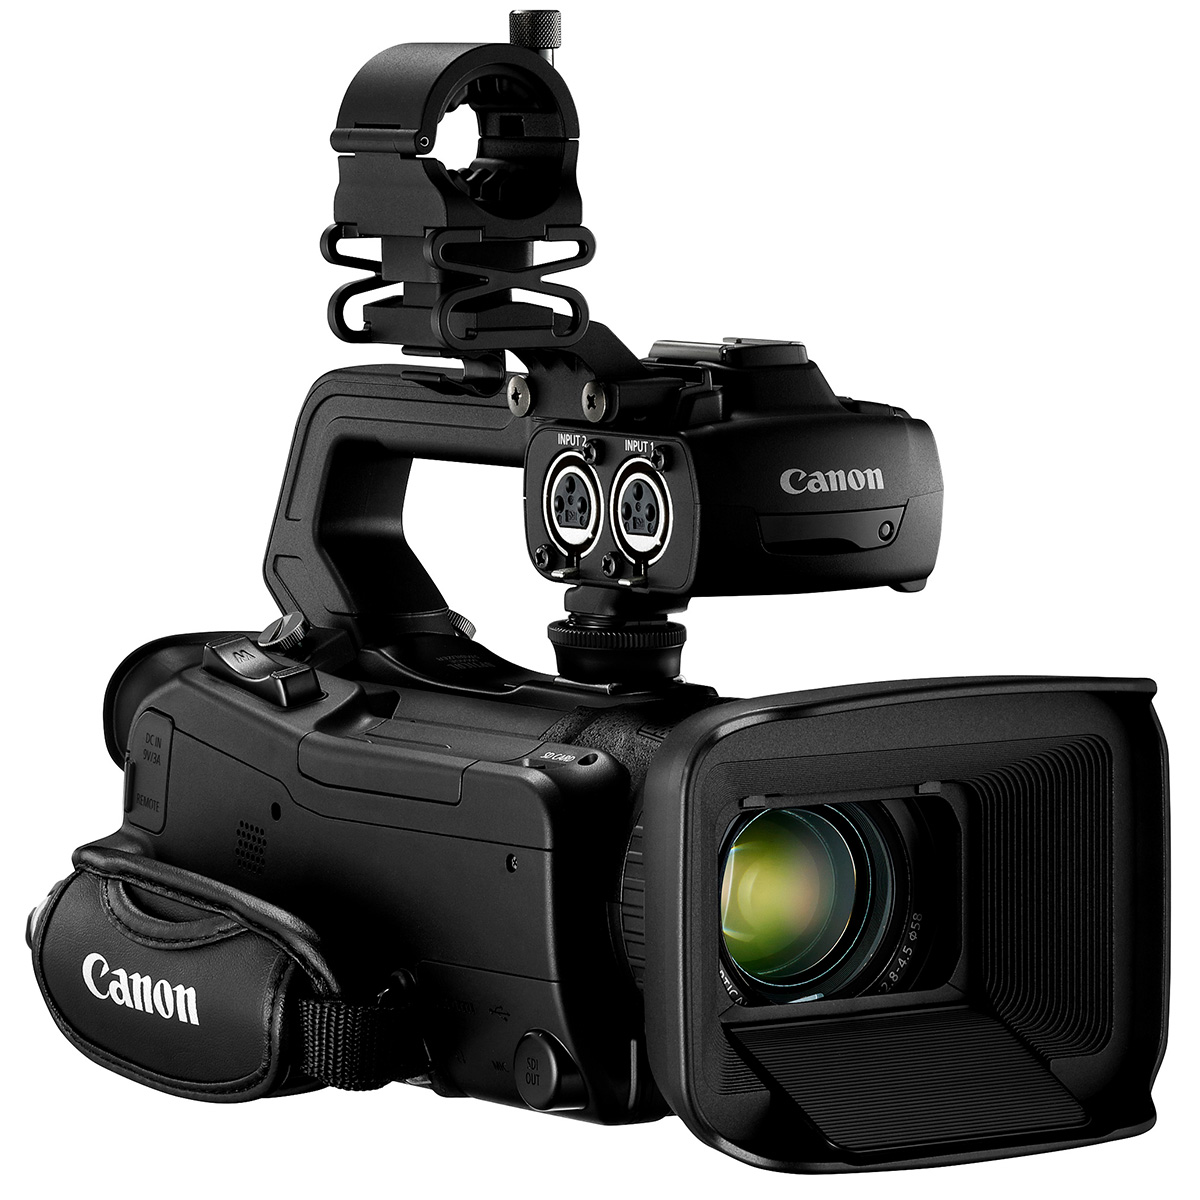 Canon XA75 Camcorder